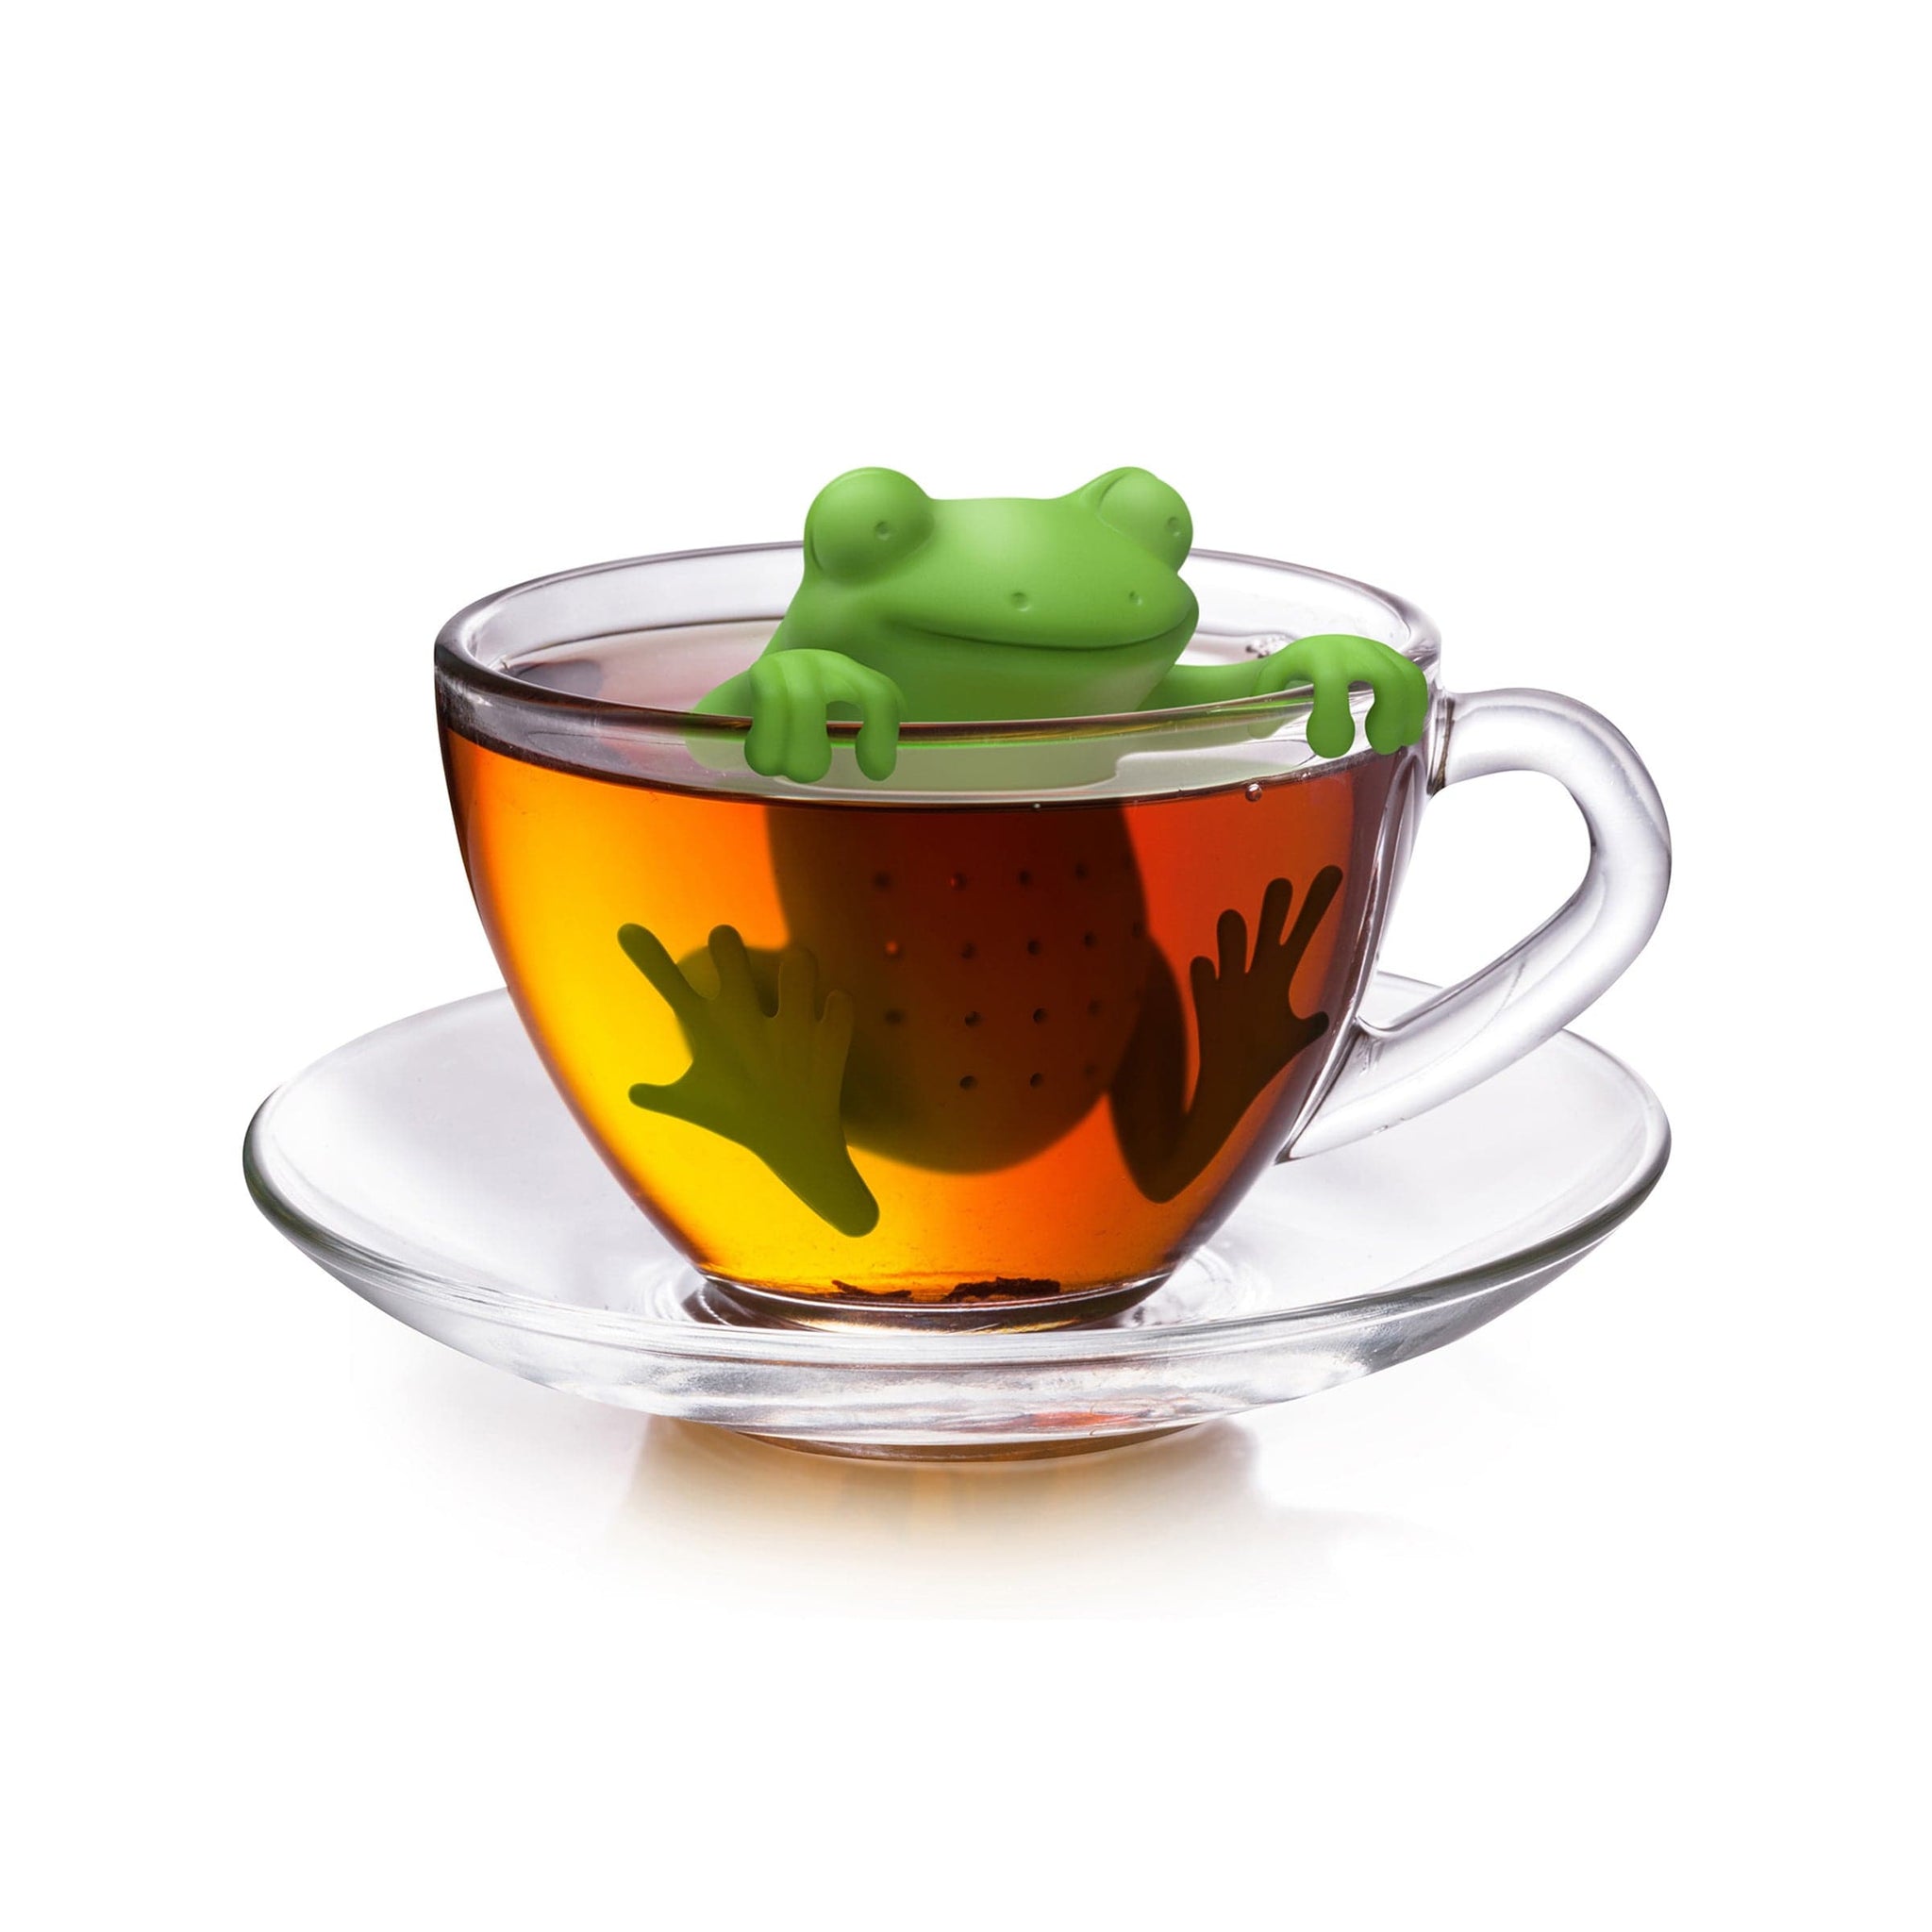  OTOTO Tea Sub Tea Steeper- Cute Tea Infuser for Loose